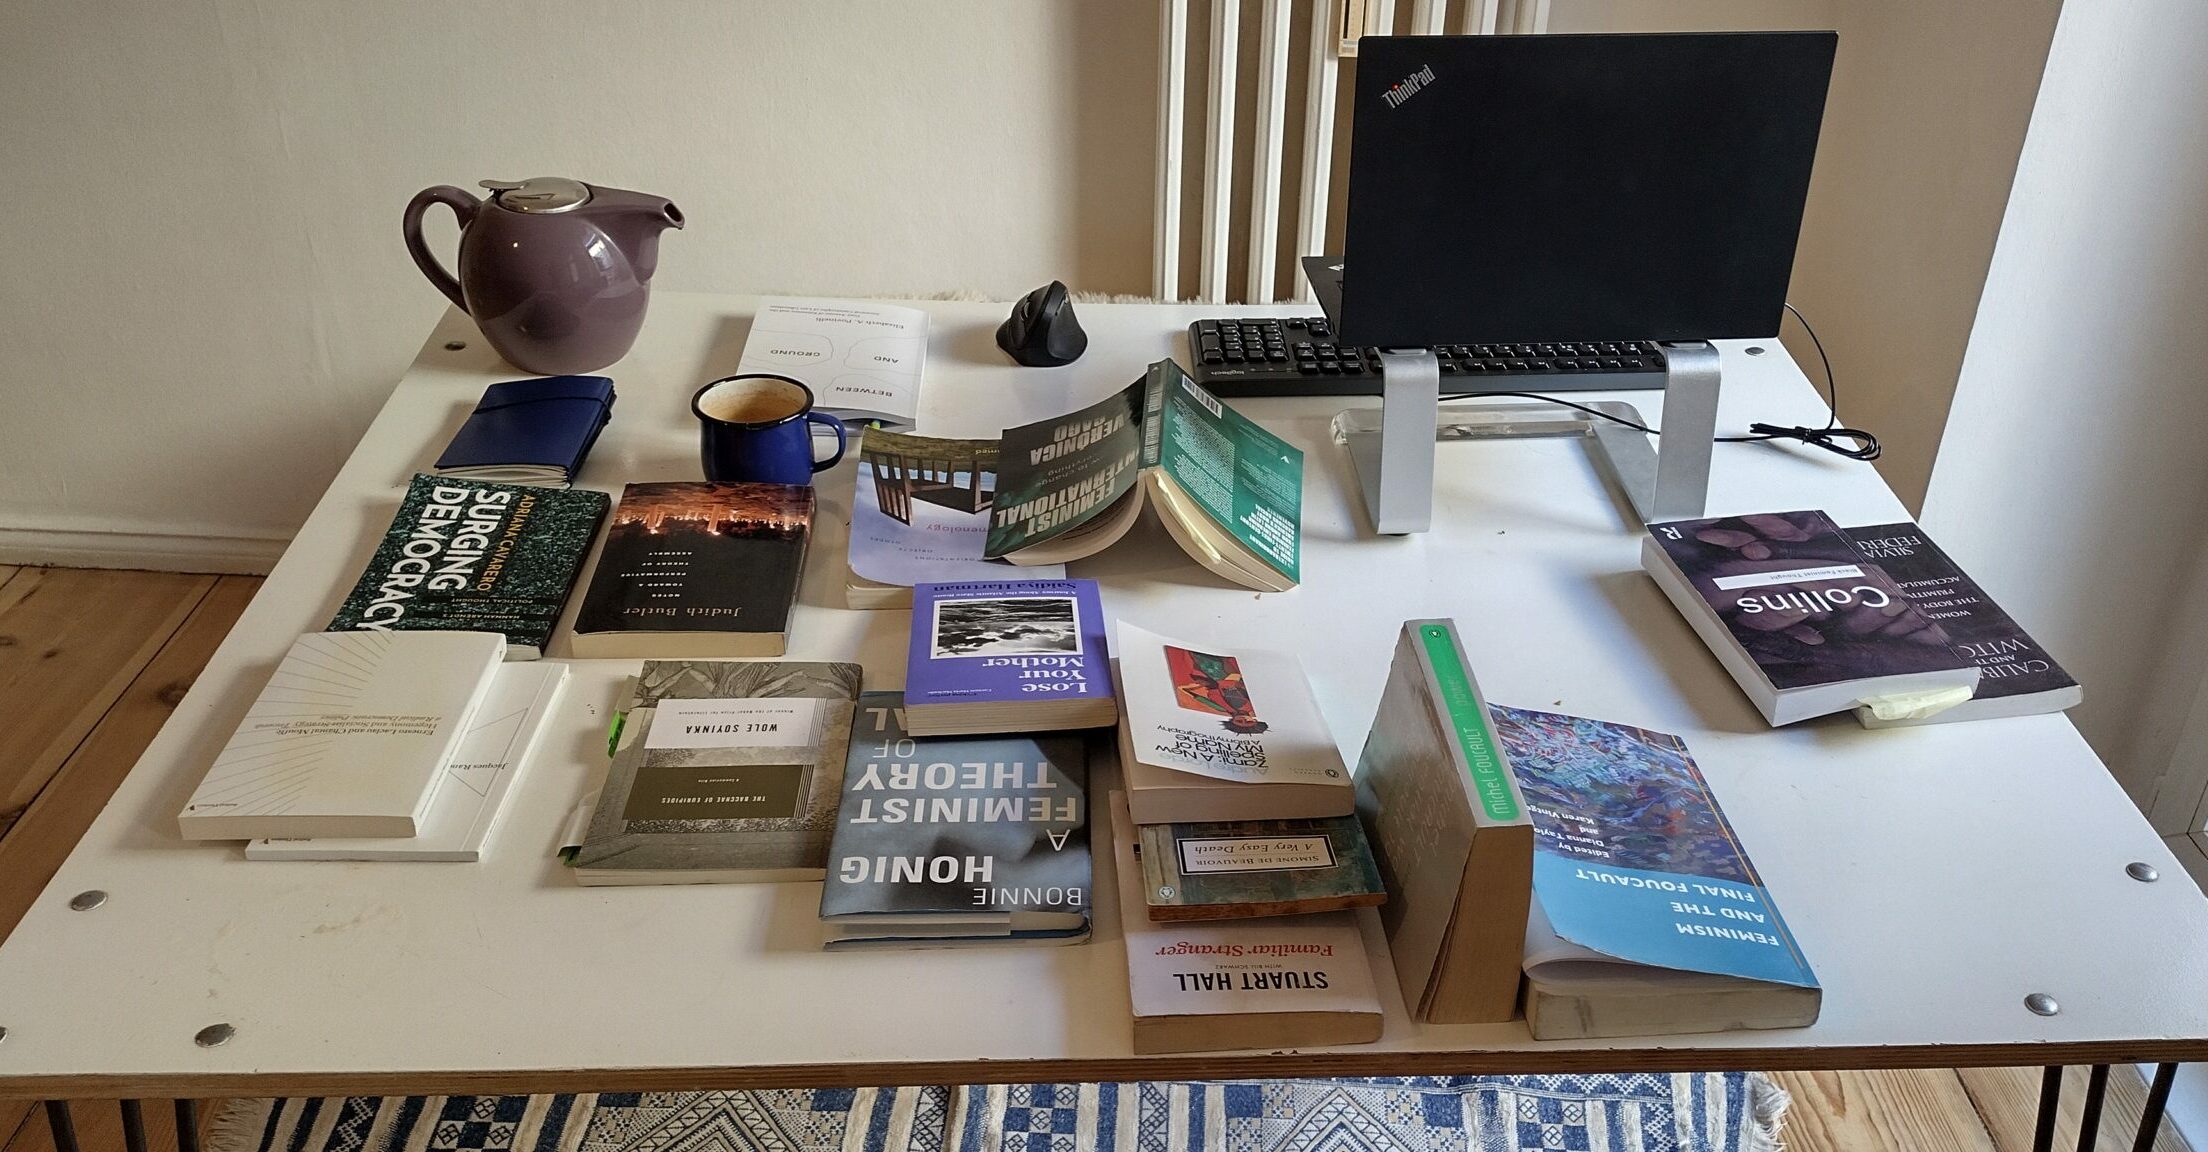 Das Bild zeigt den Schreibtisch von Liesbeth Schoonheim, auf dem sich mehrere aufgeschlagene Bücher, eine Tasse, eine Teekanne, Bildschirm und Tastatur befinden.